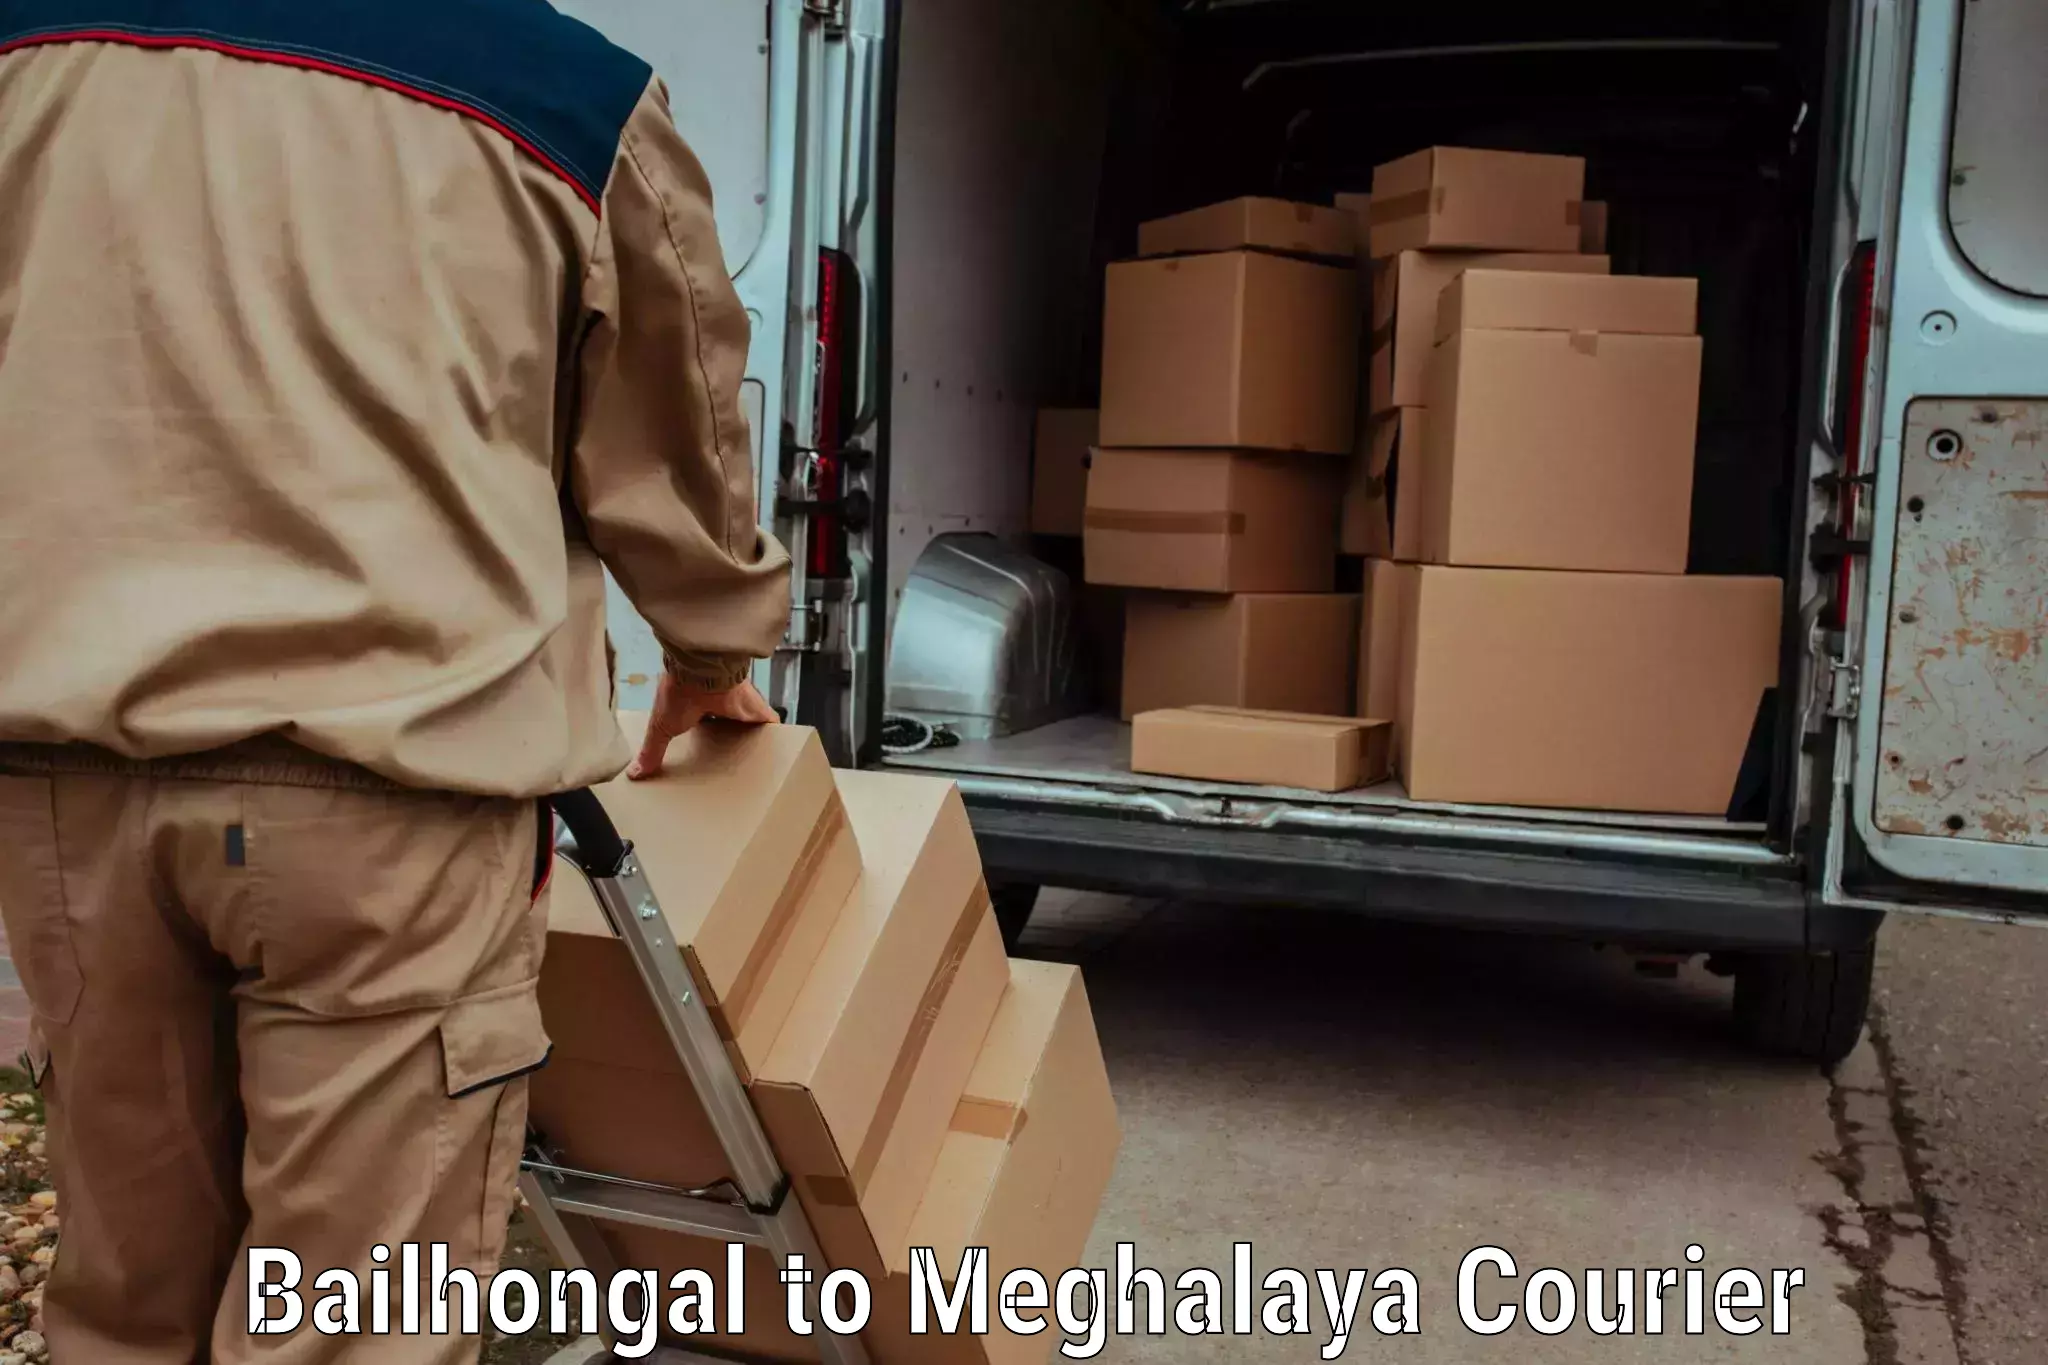 Baggage transport innovation Bailhongal to Meghalaya